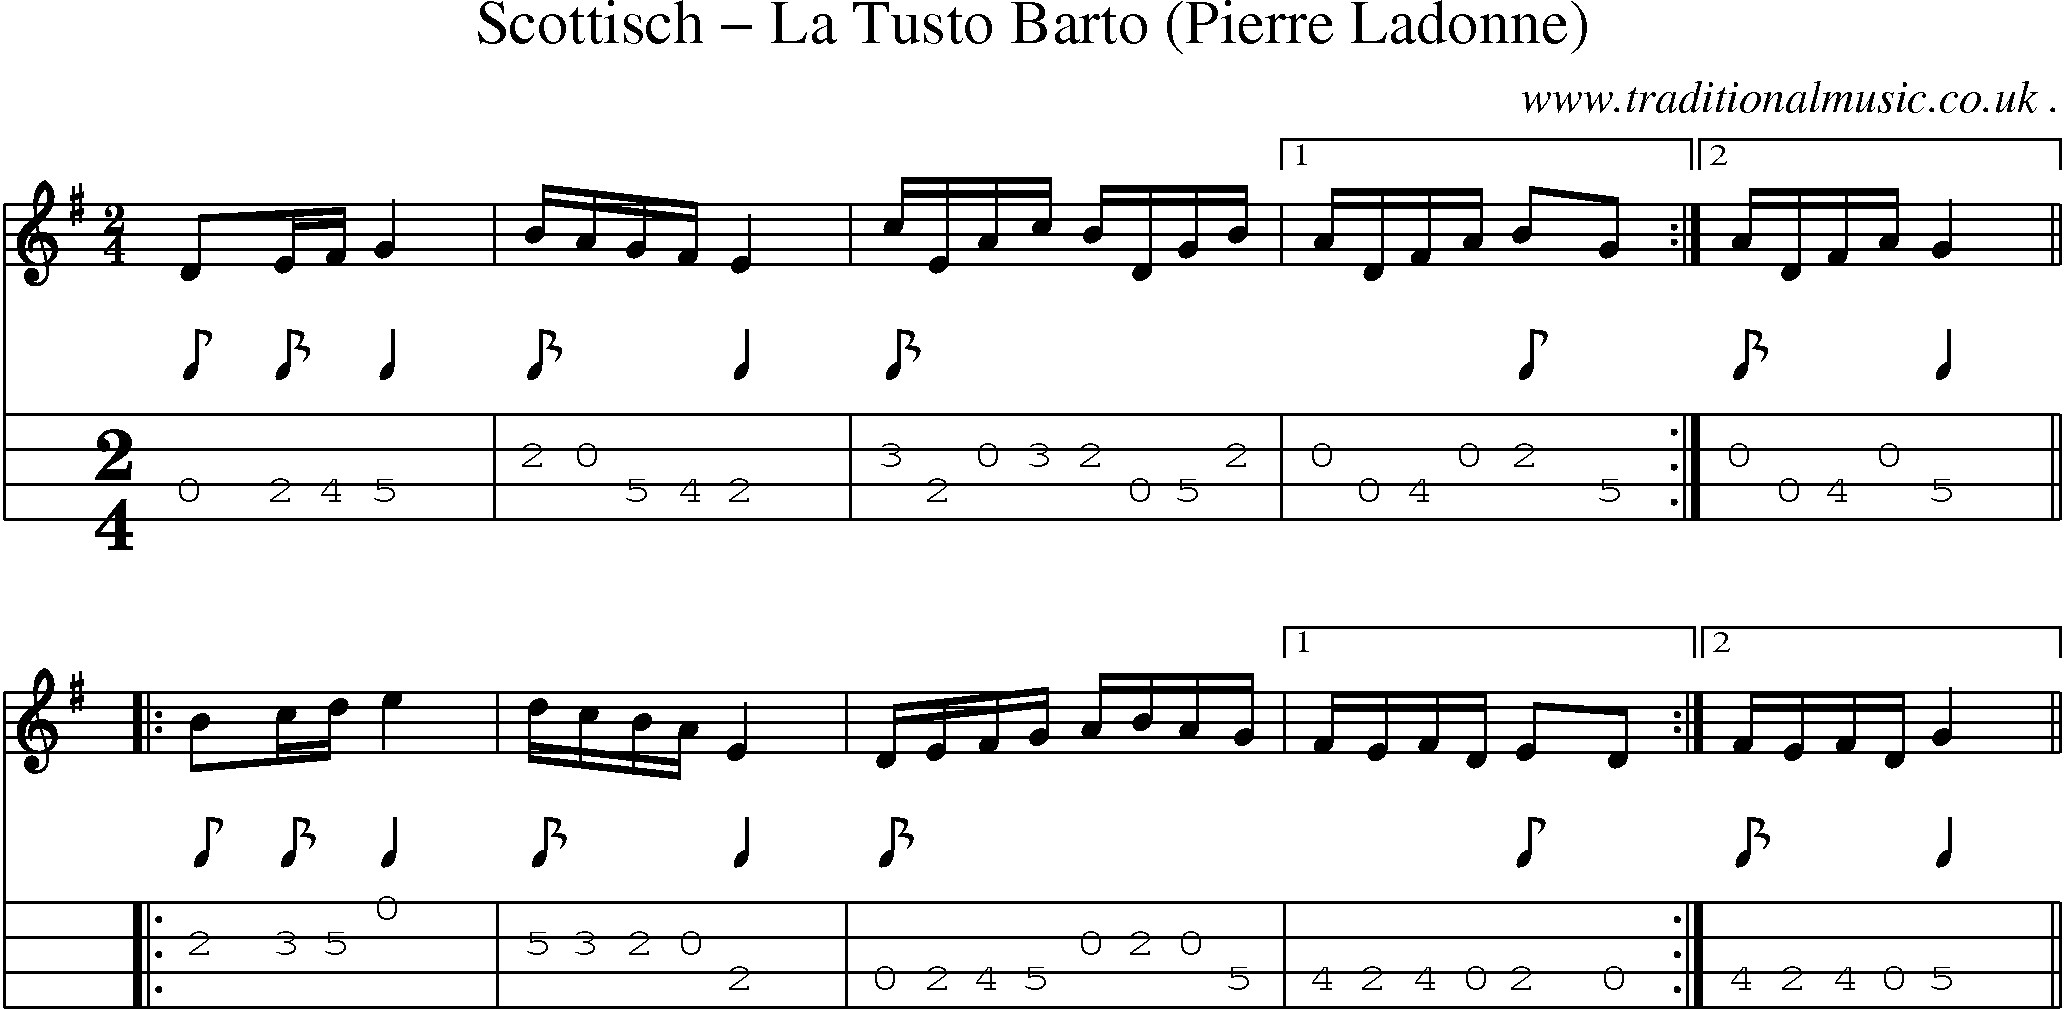 Sheet-Music and Mandolin Tabs for Scottisch La Tusto Barto (pierre Ladonne)